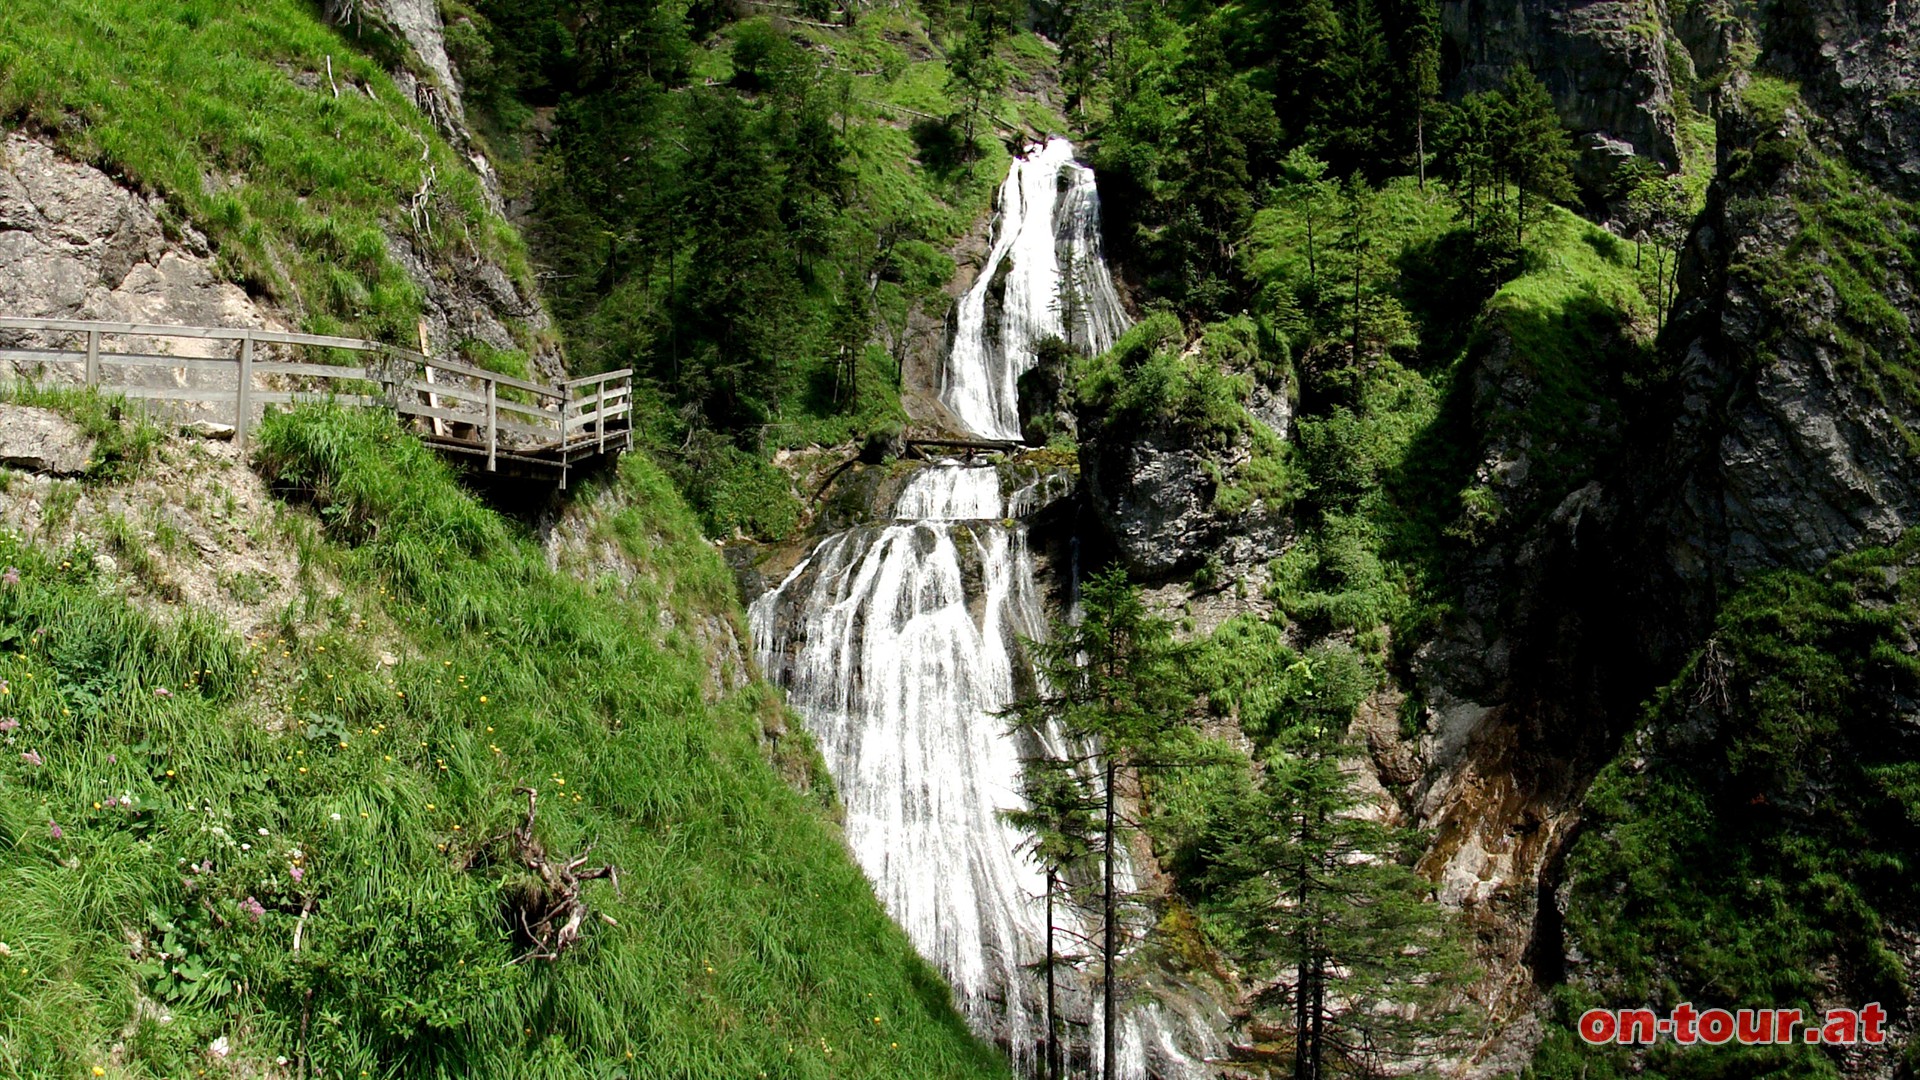 Den zweistufigen Wasserfall erlebt man über mehrere spannende und intensive Perspektiven am Steig.